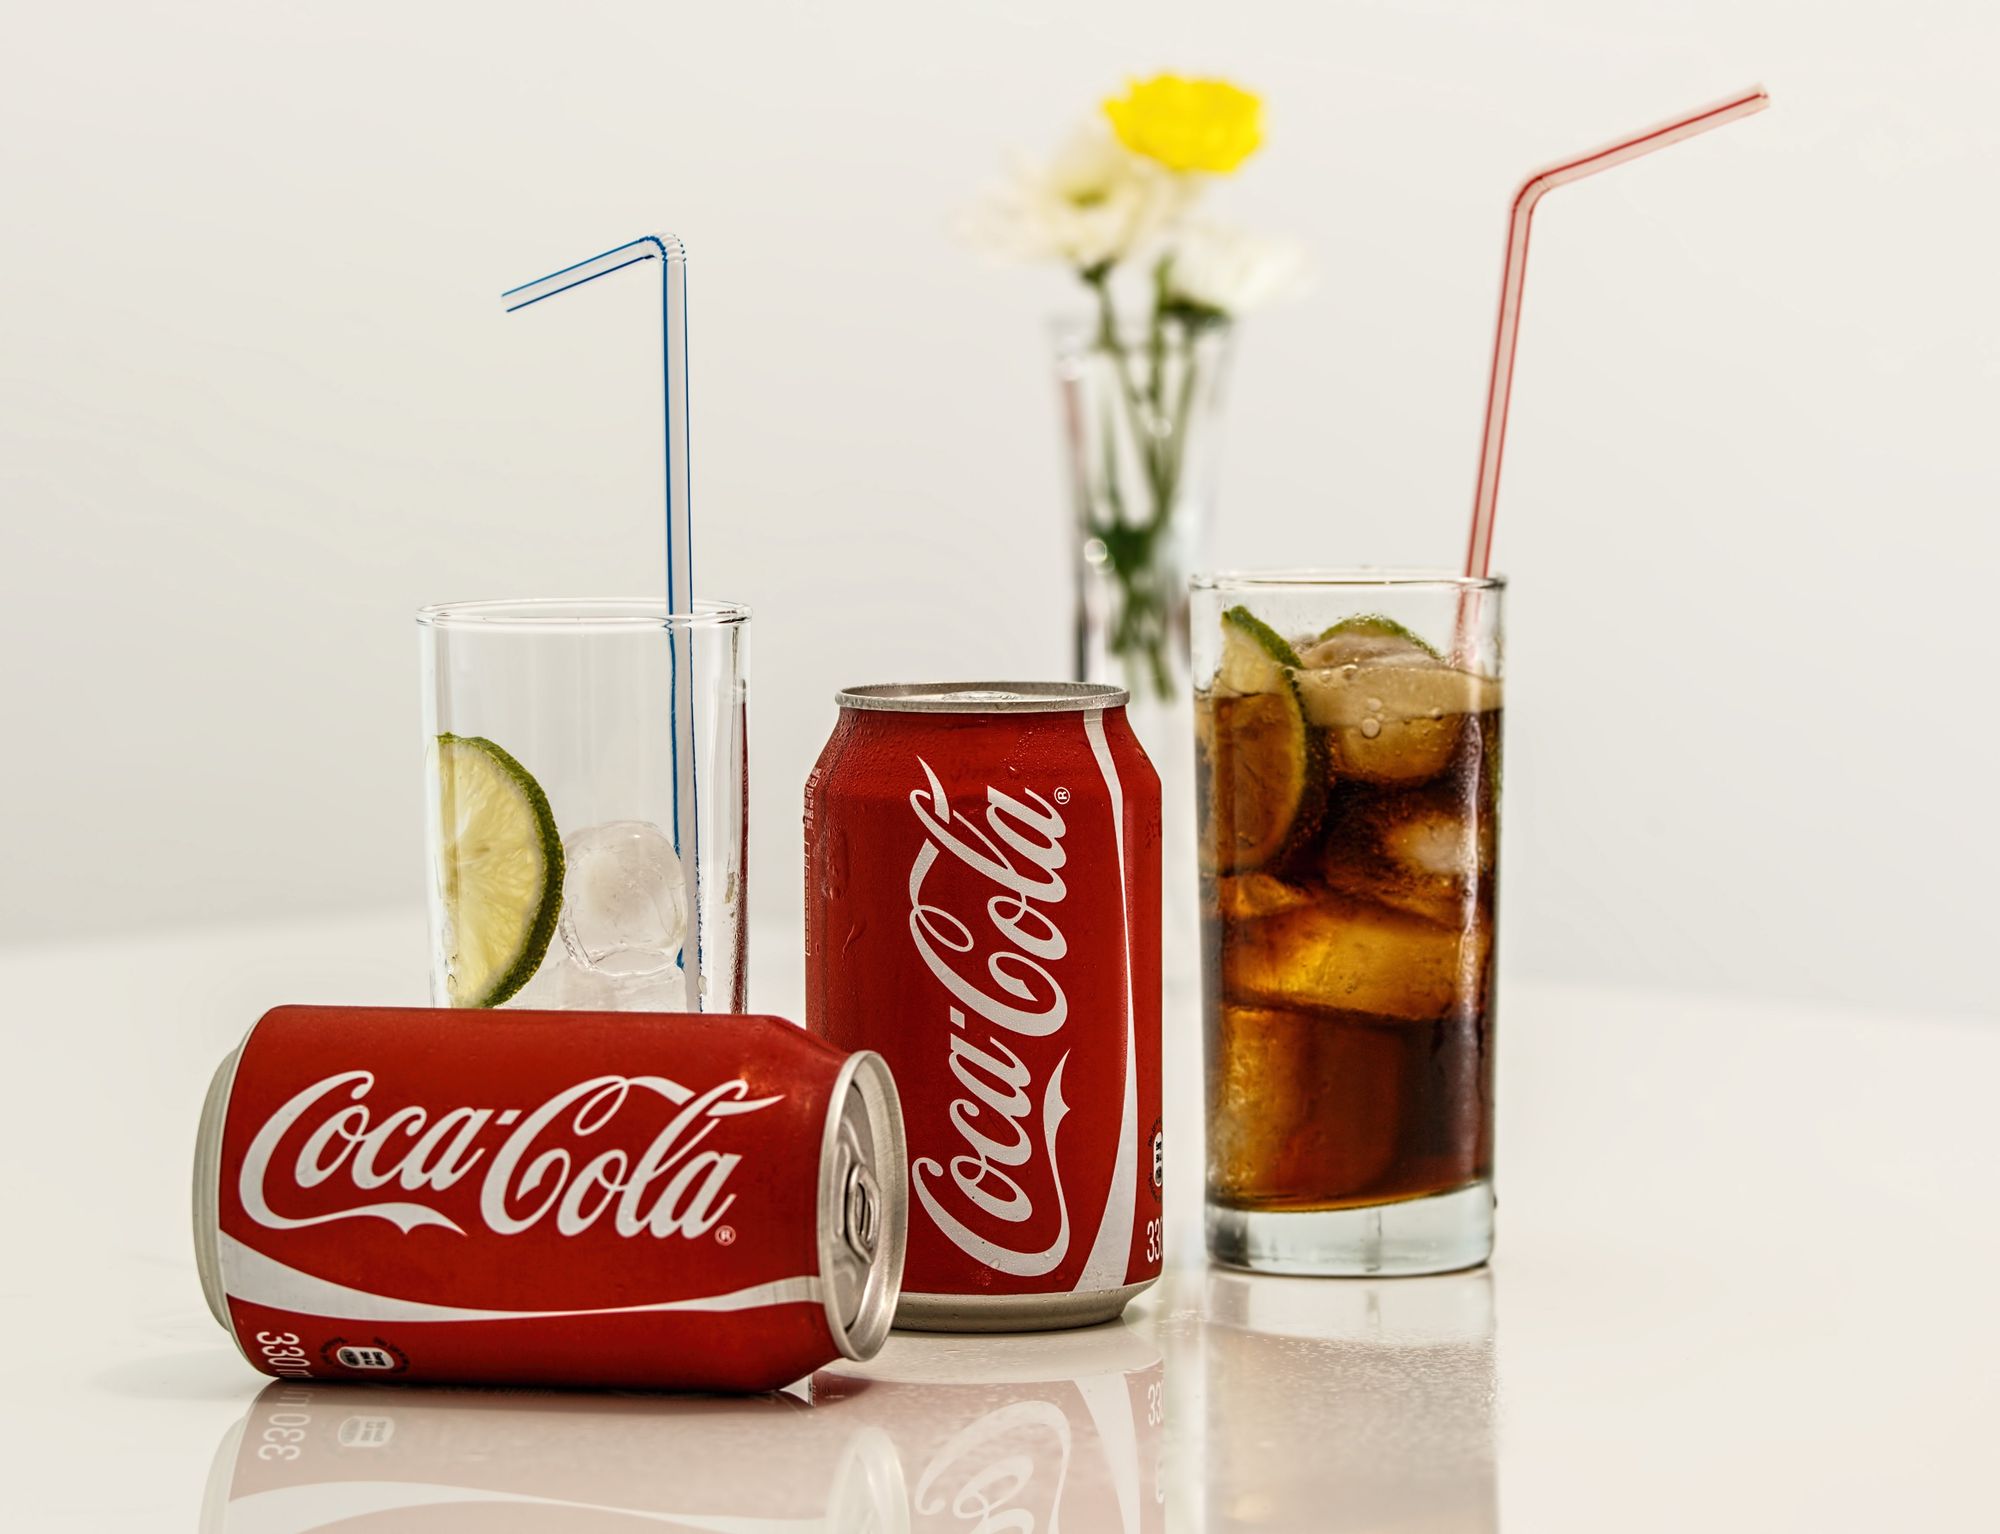 Coca-cola share a coke content strategy